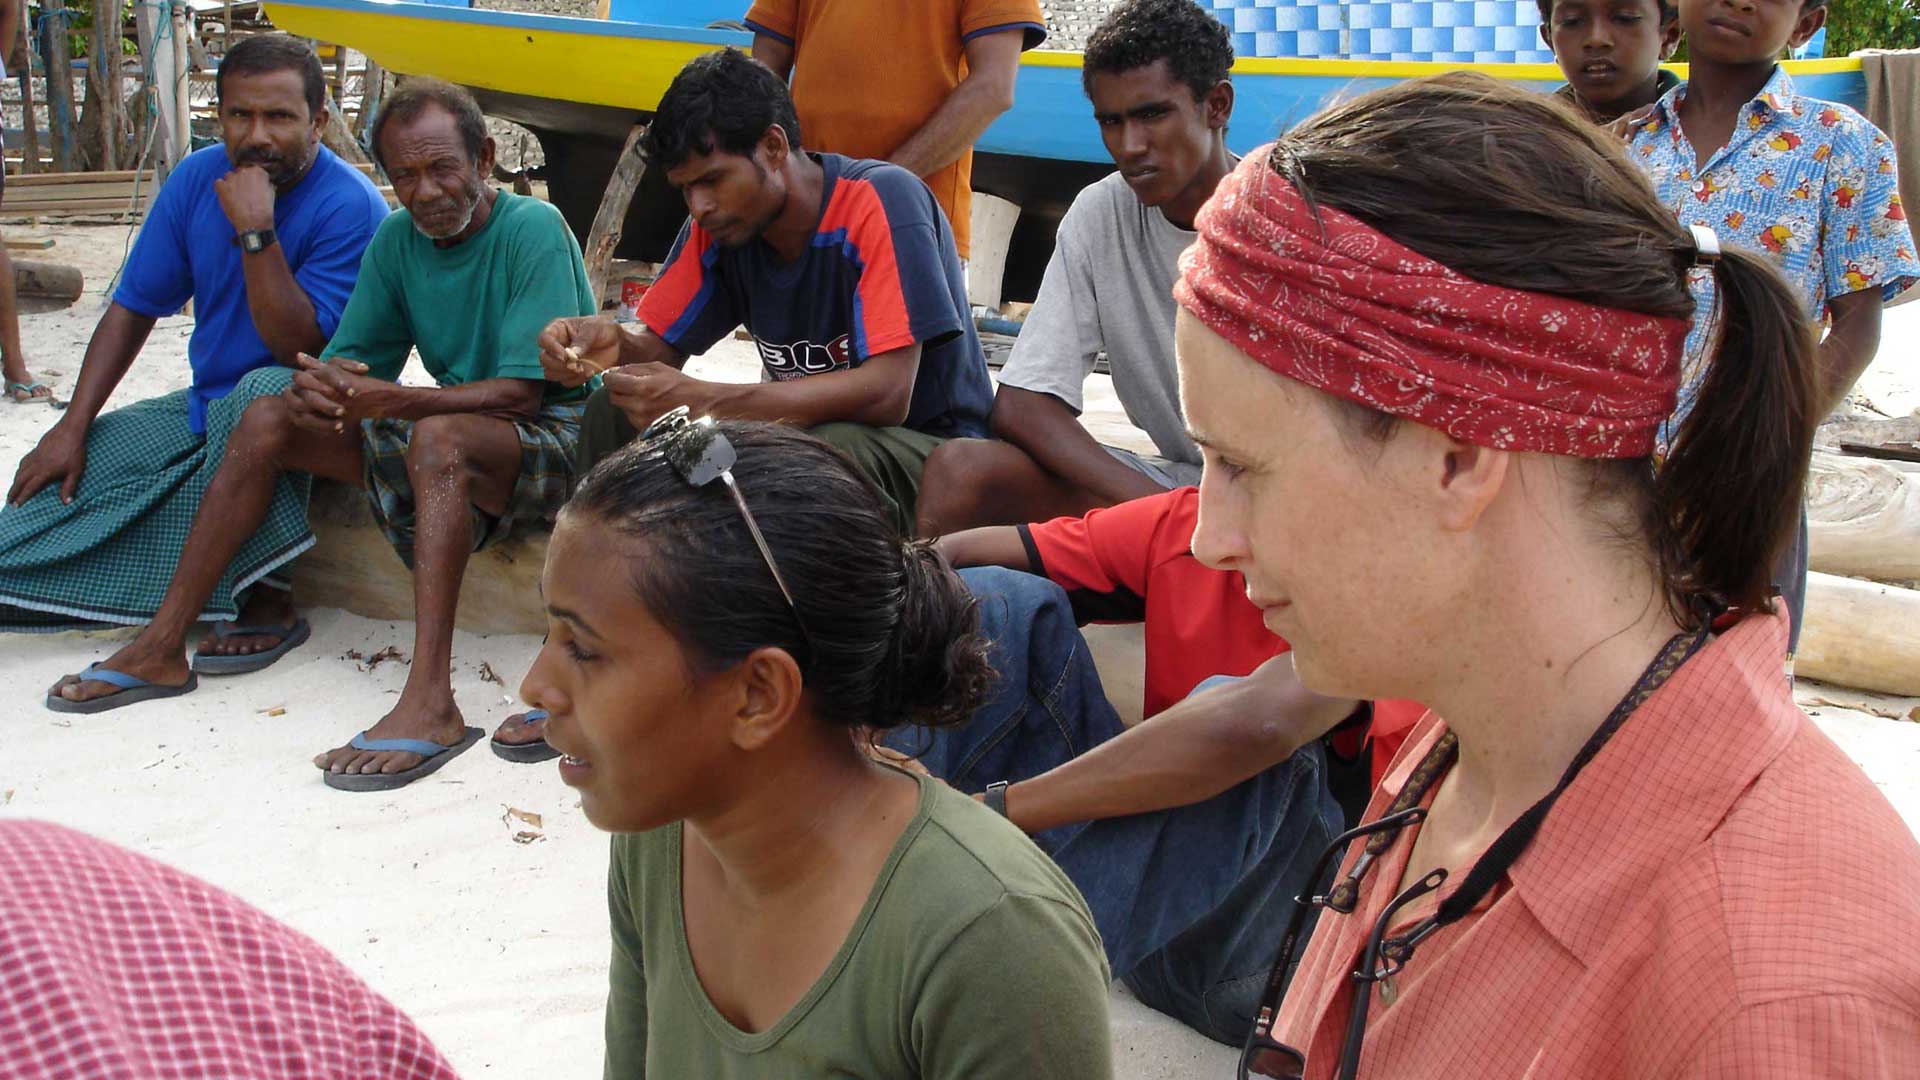 Tournage - Les réfugiés de la planète bleue - Hélène Choquette